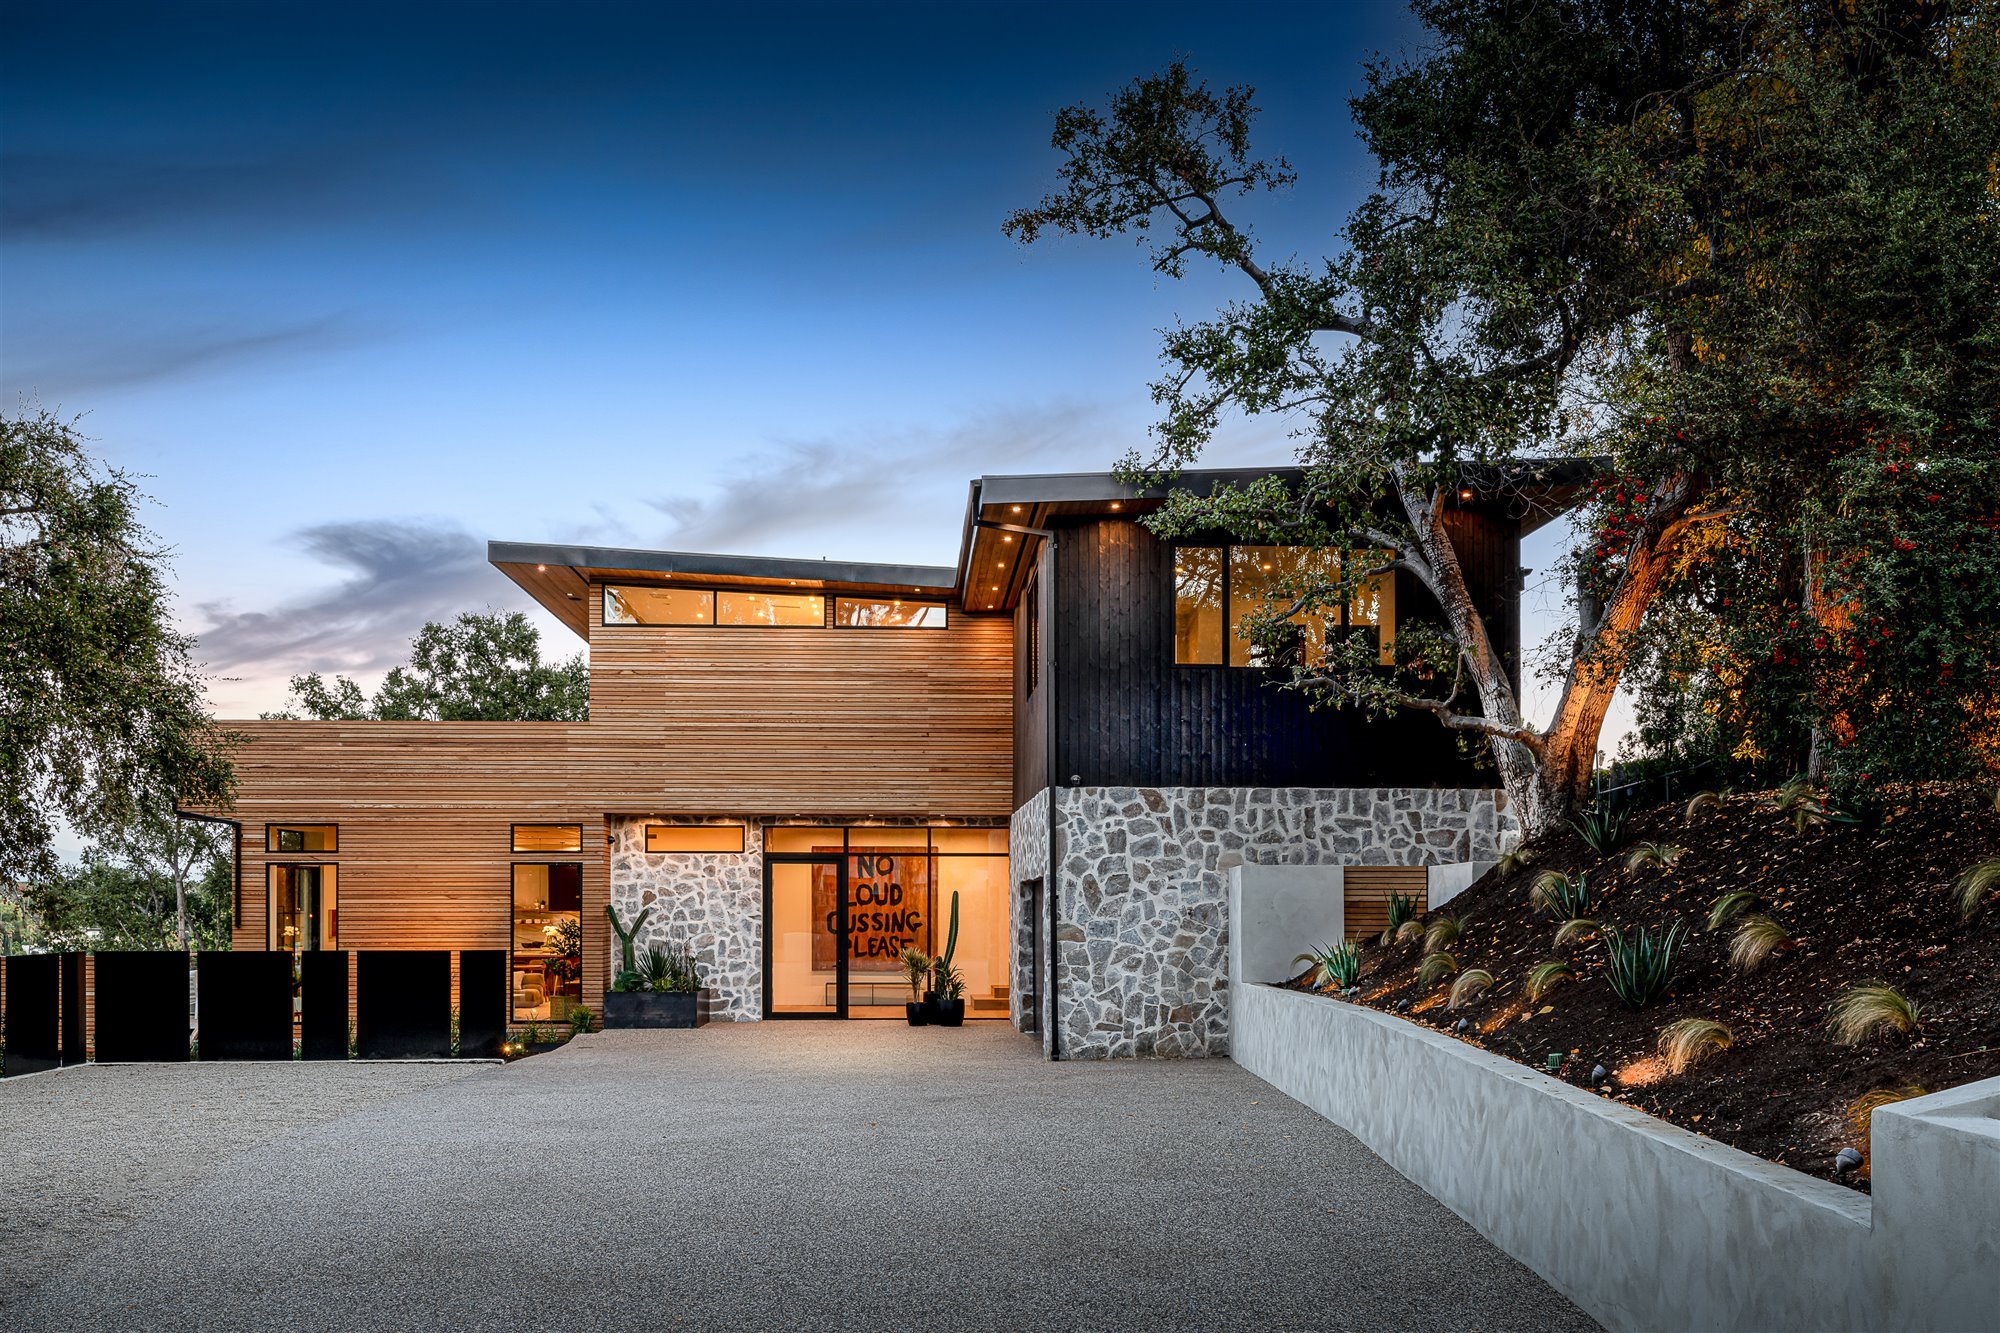 Casa moderna del actor de Modern Family Jesse Tyler Ferguson en Encino los Angeles entrada de madera